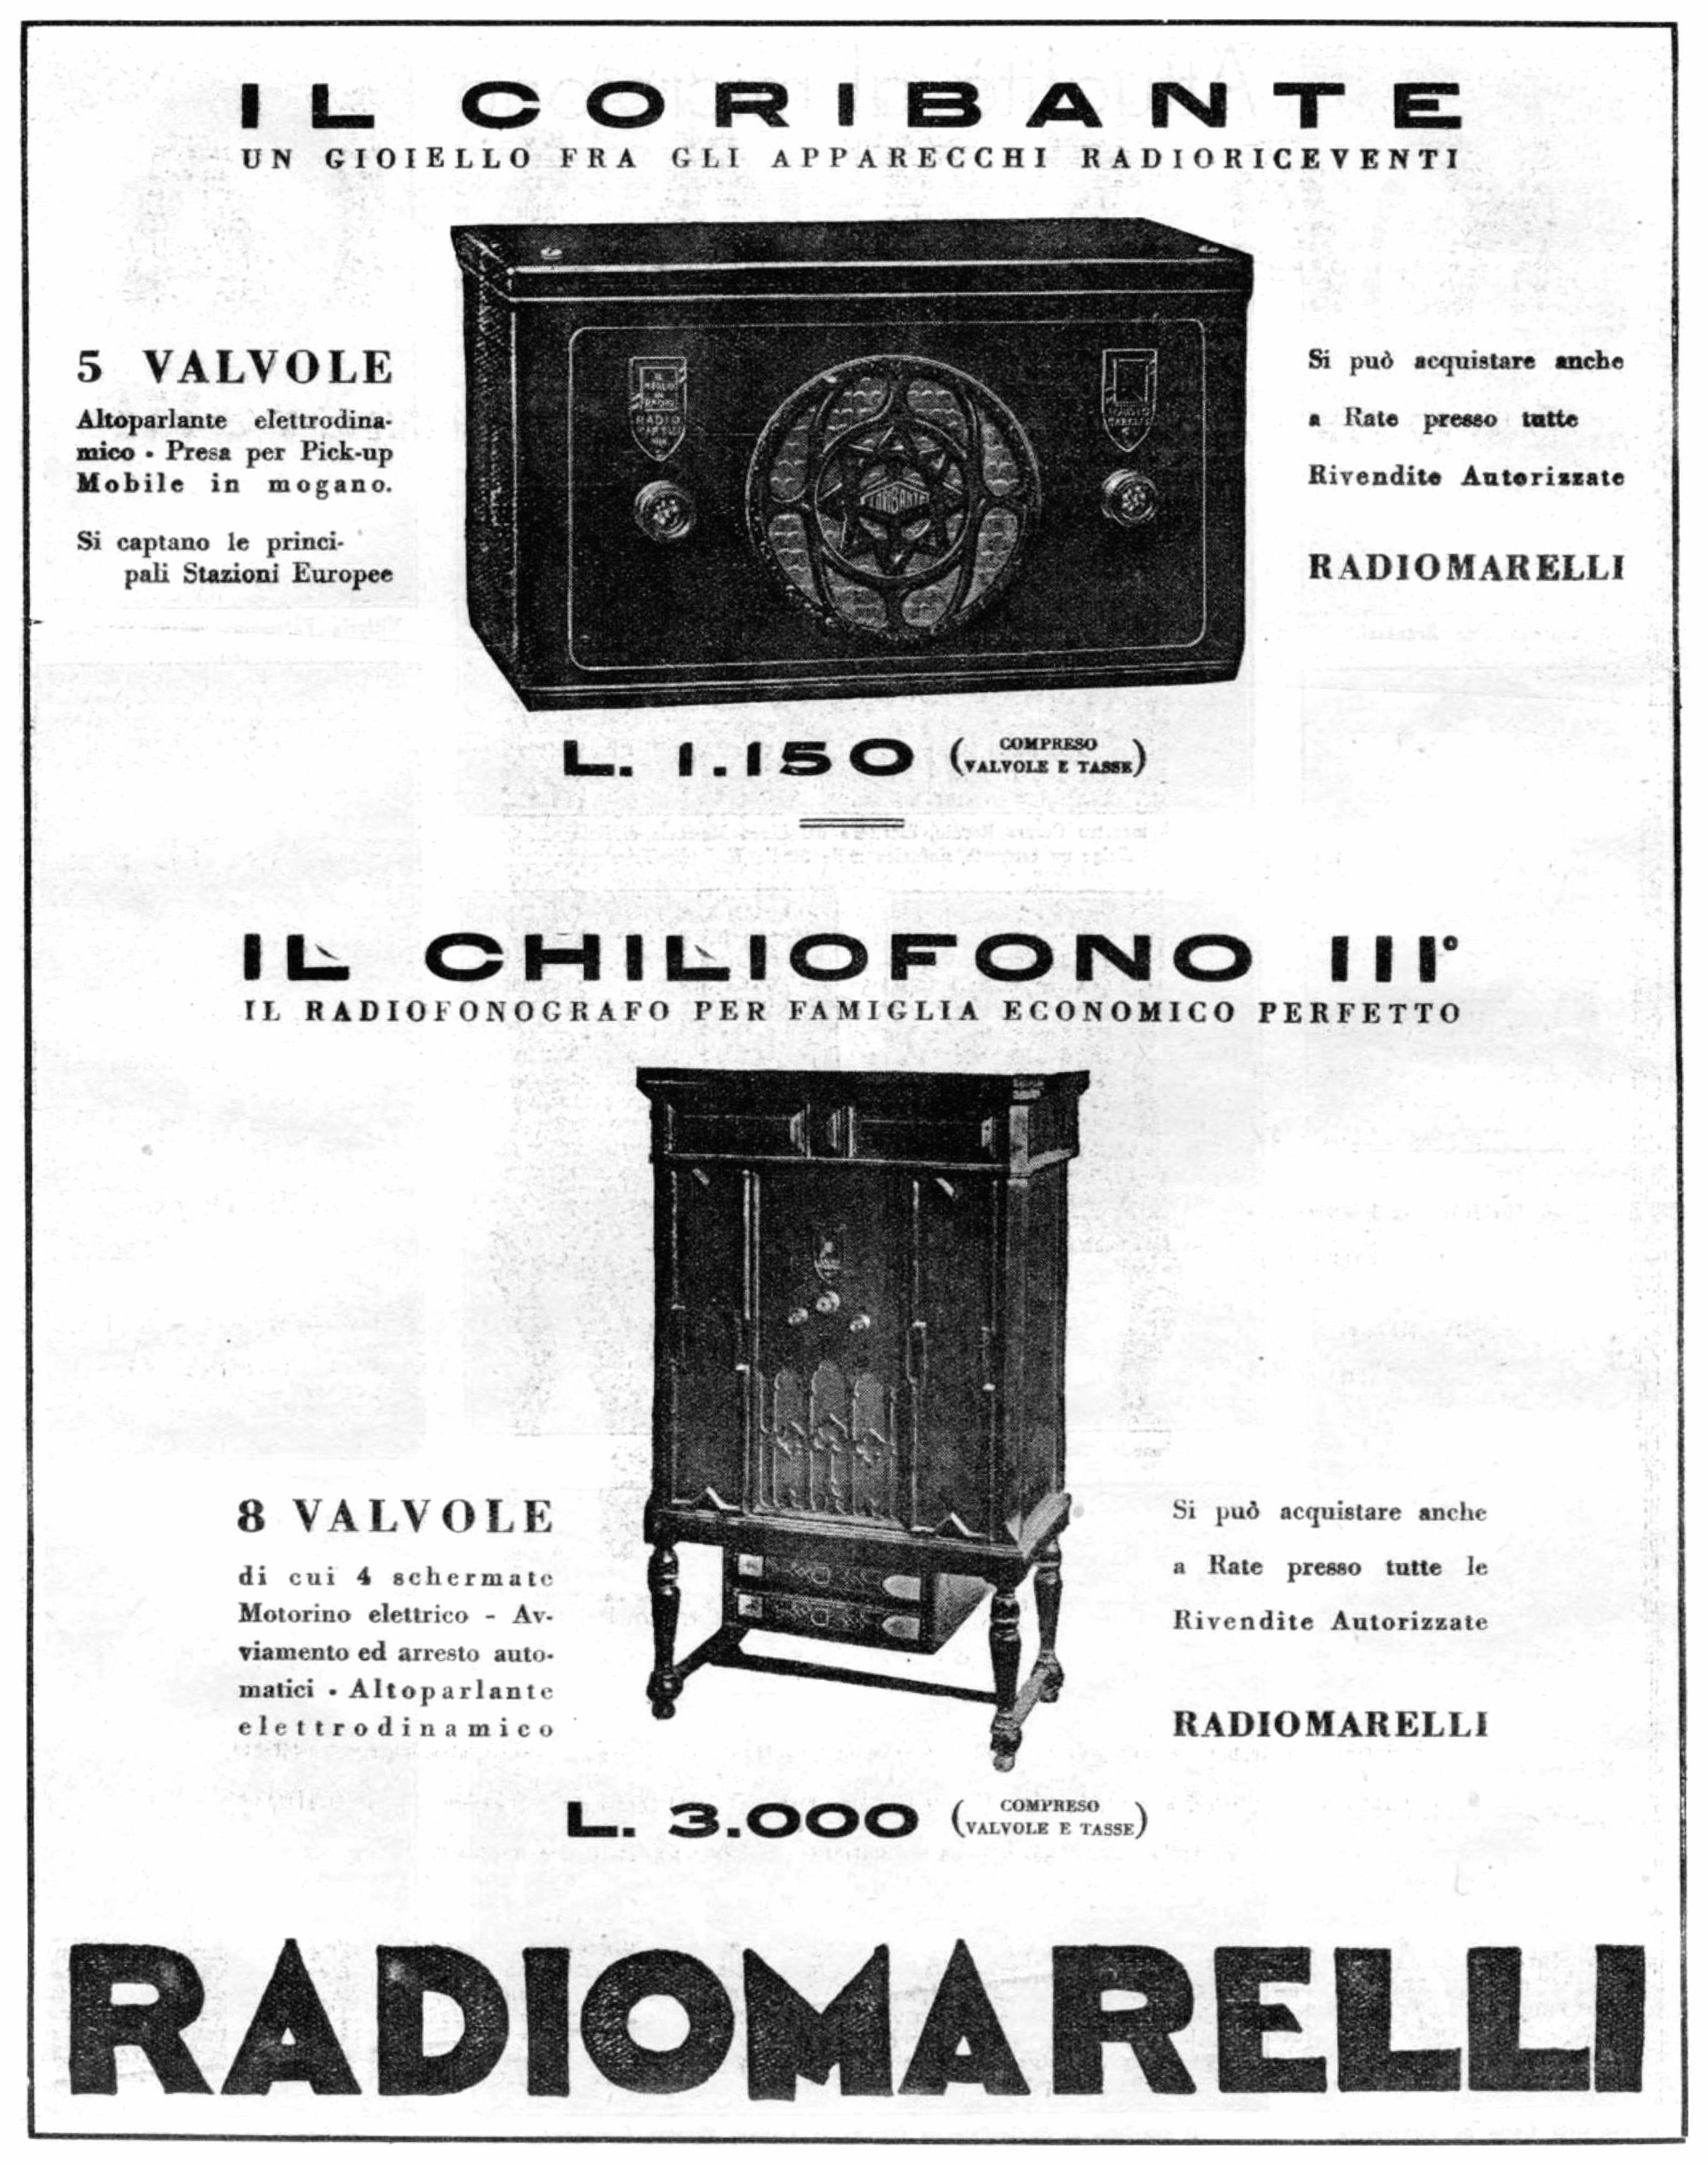 Radiomarelli 1932 191.jpg